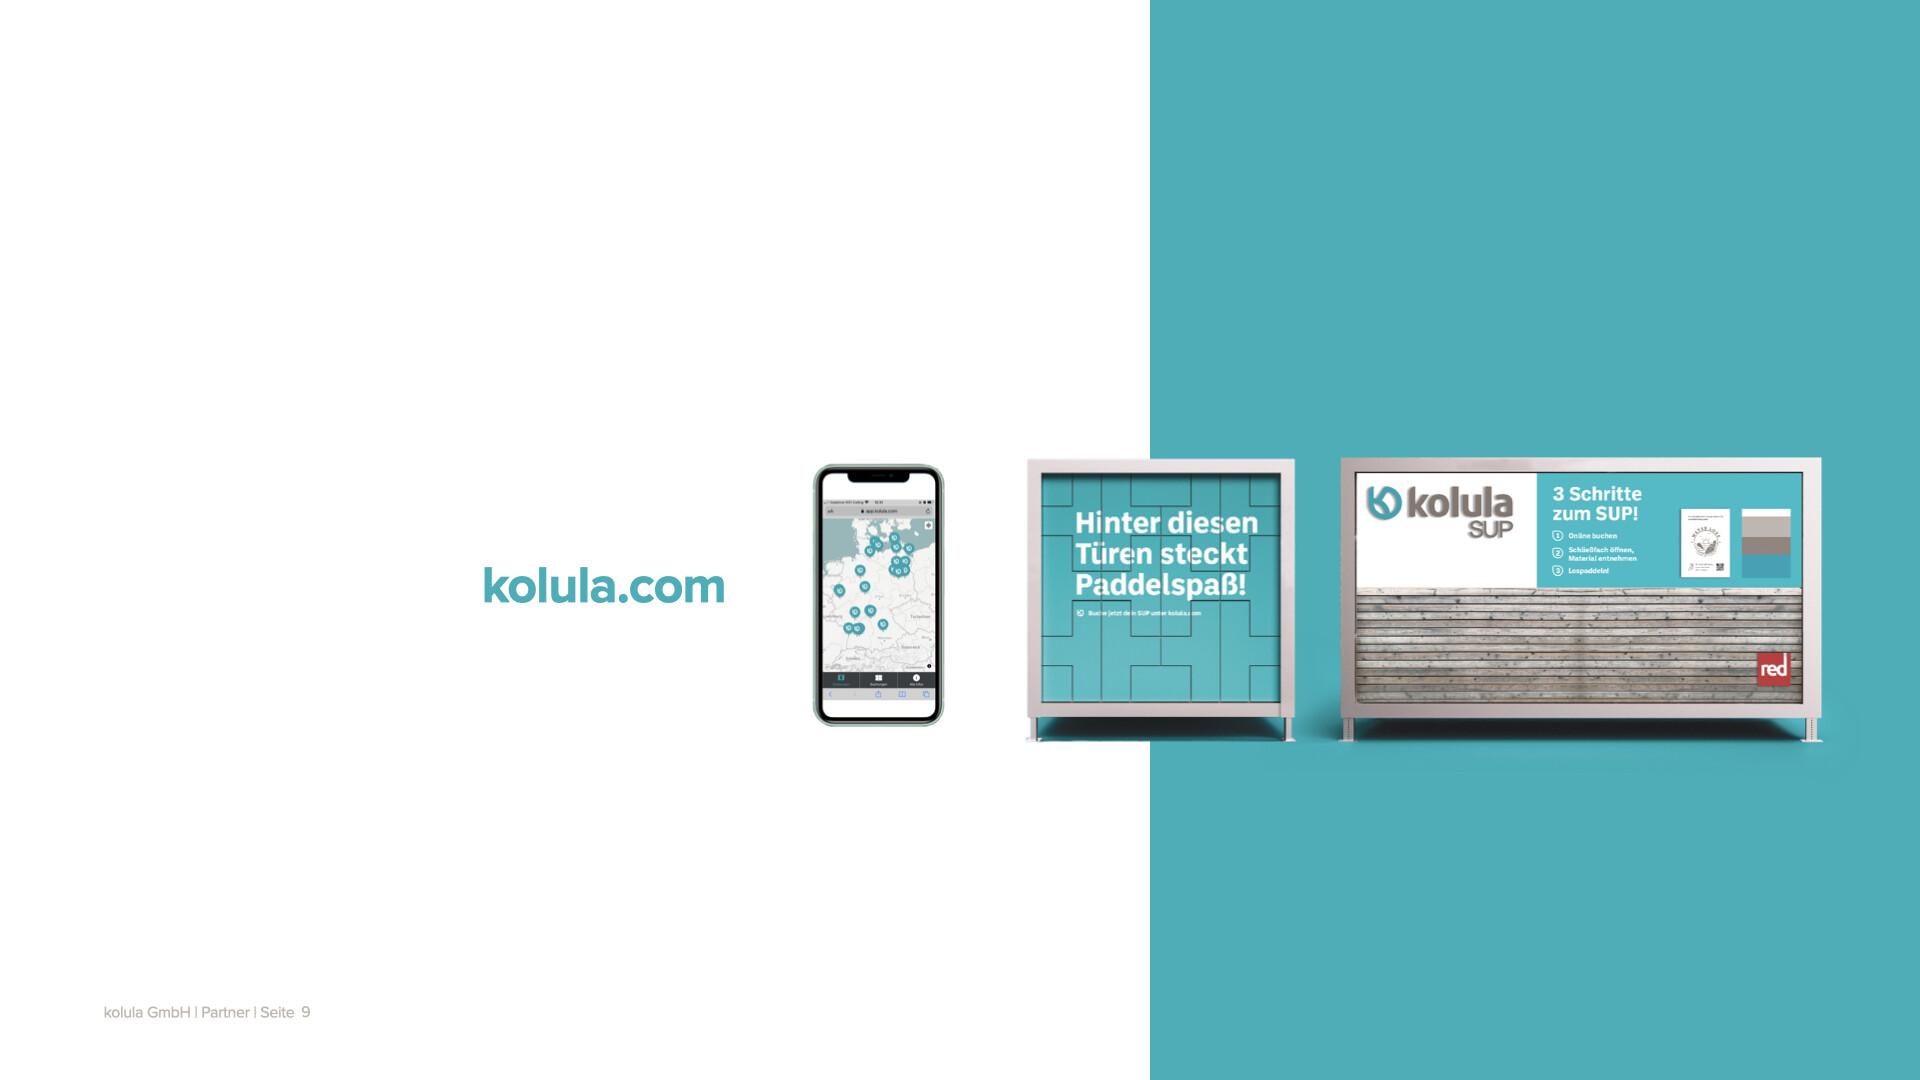 kolula / startup von München / Background